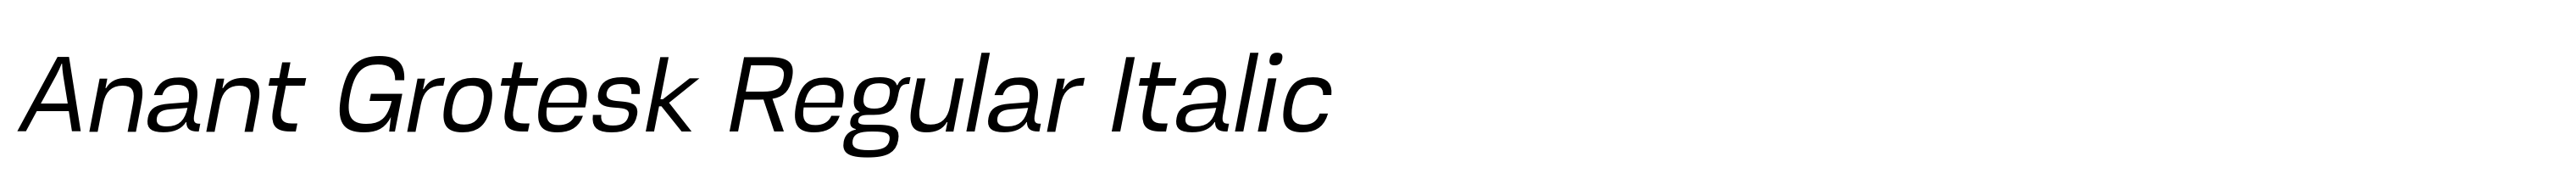 Anant Grotesk Regular Italic